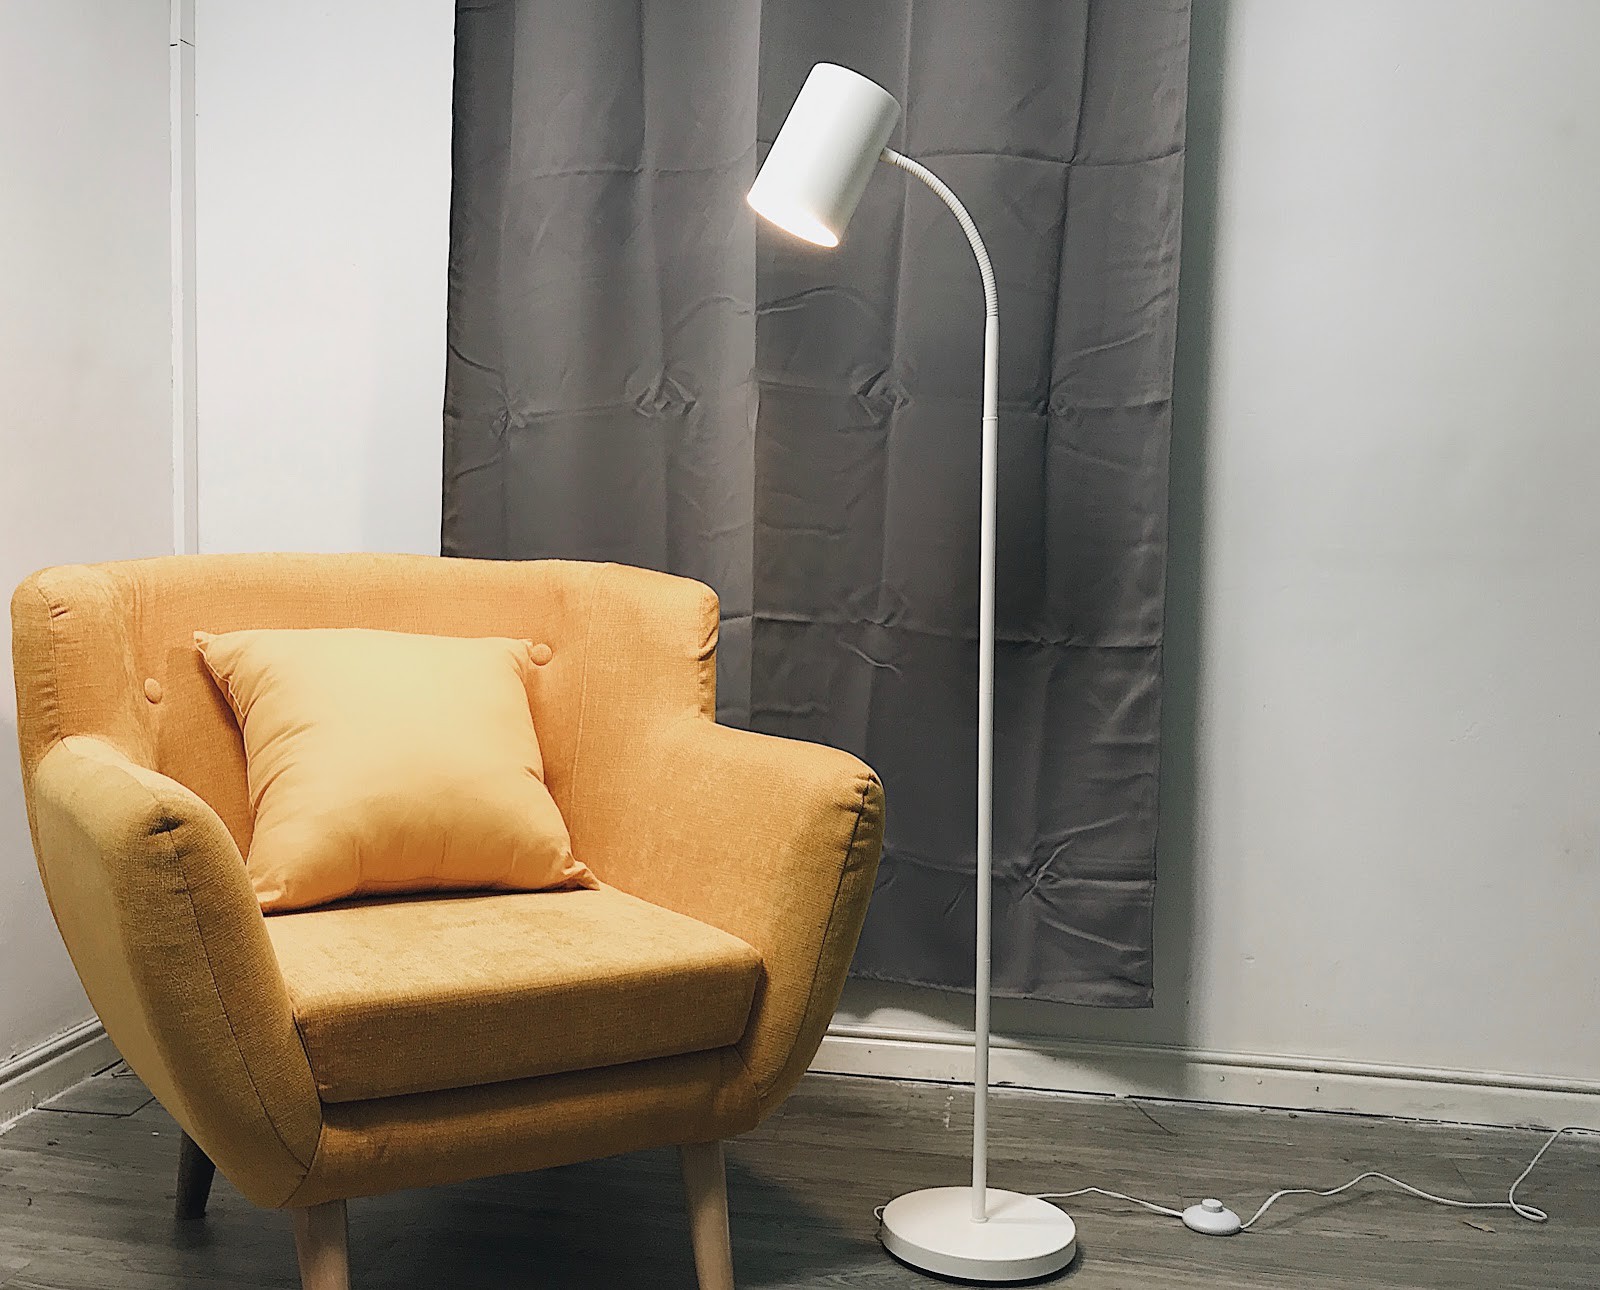 binnen Toestand Schrijf een brief Muốn trang trí nhà theo phong cách tối giản “minimalist”, hãy chọn mua  chiếc đèn Philips này thay vì đồ rẻ tiền và kém chất lượng